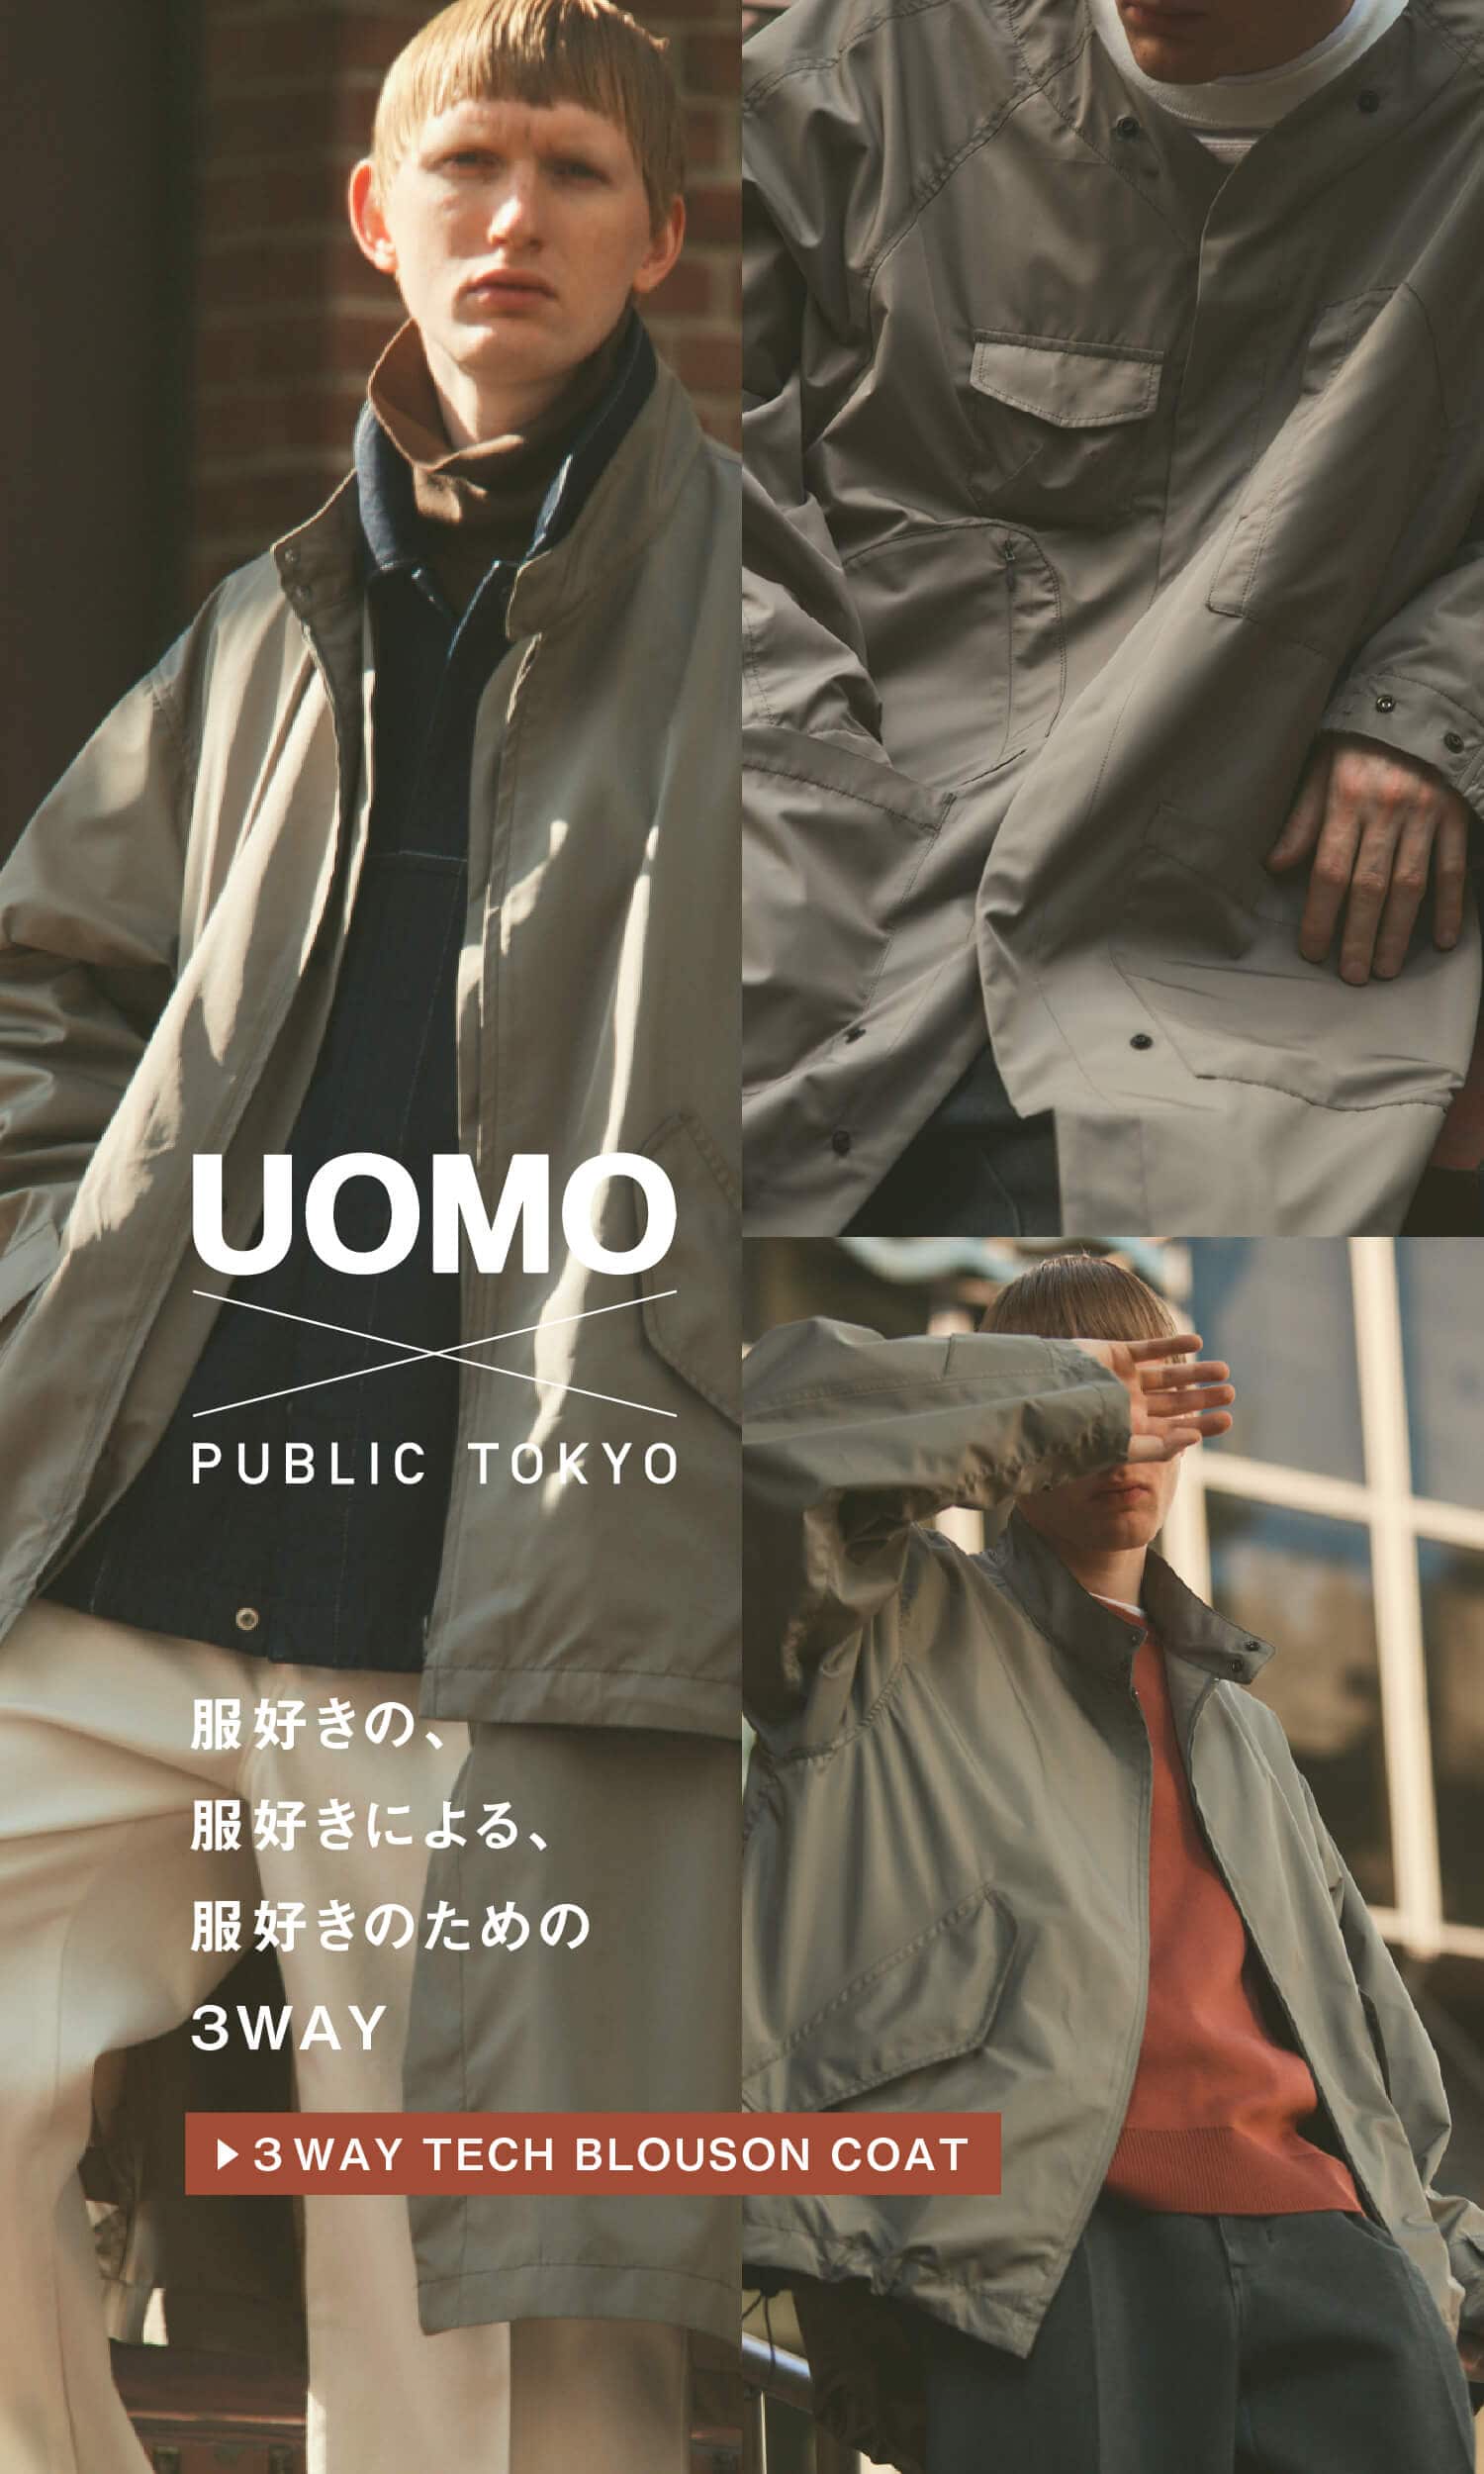 UOMO×PUBLIC TOKYO